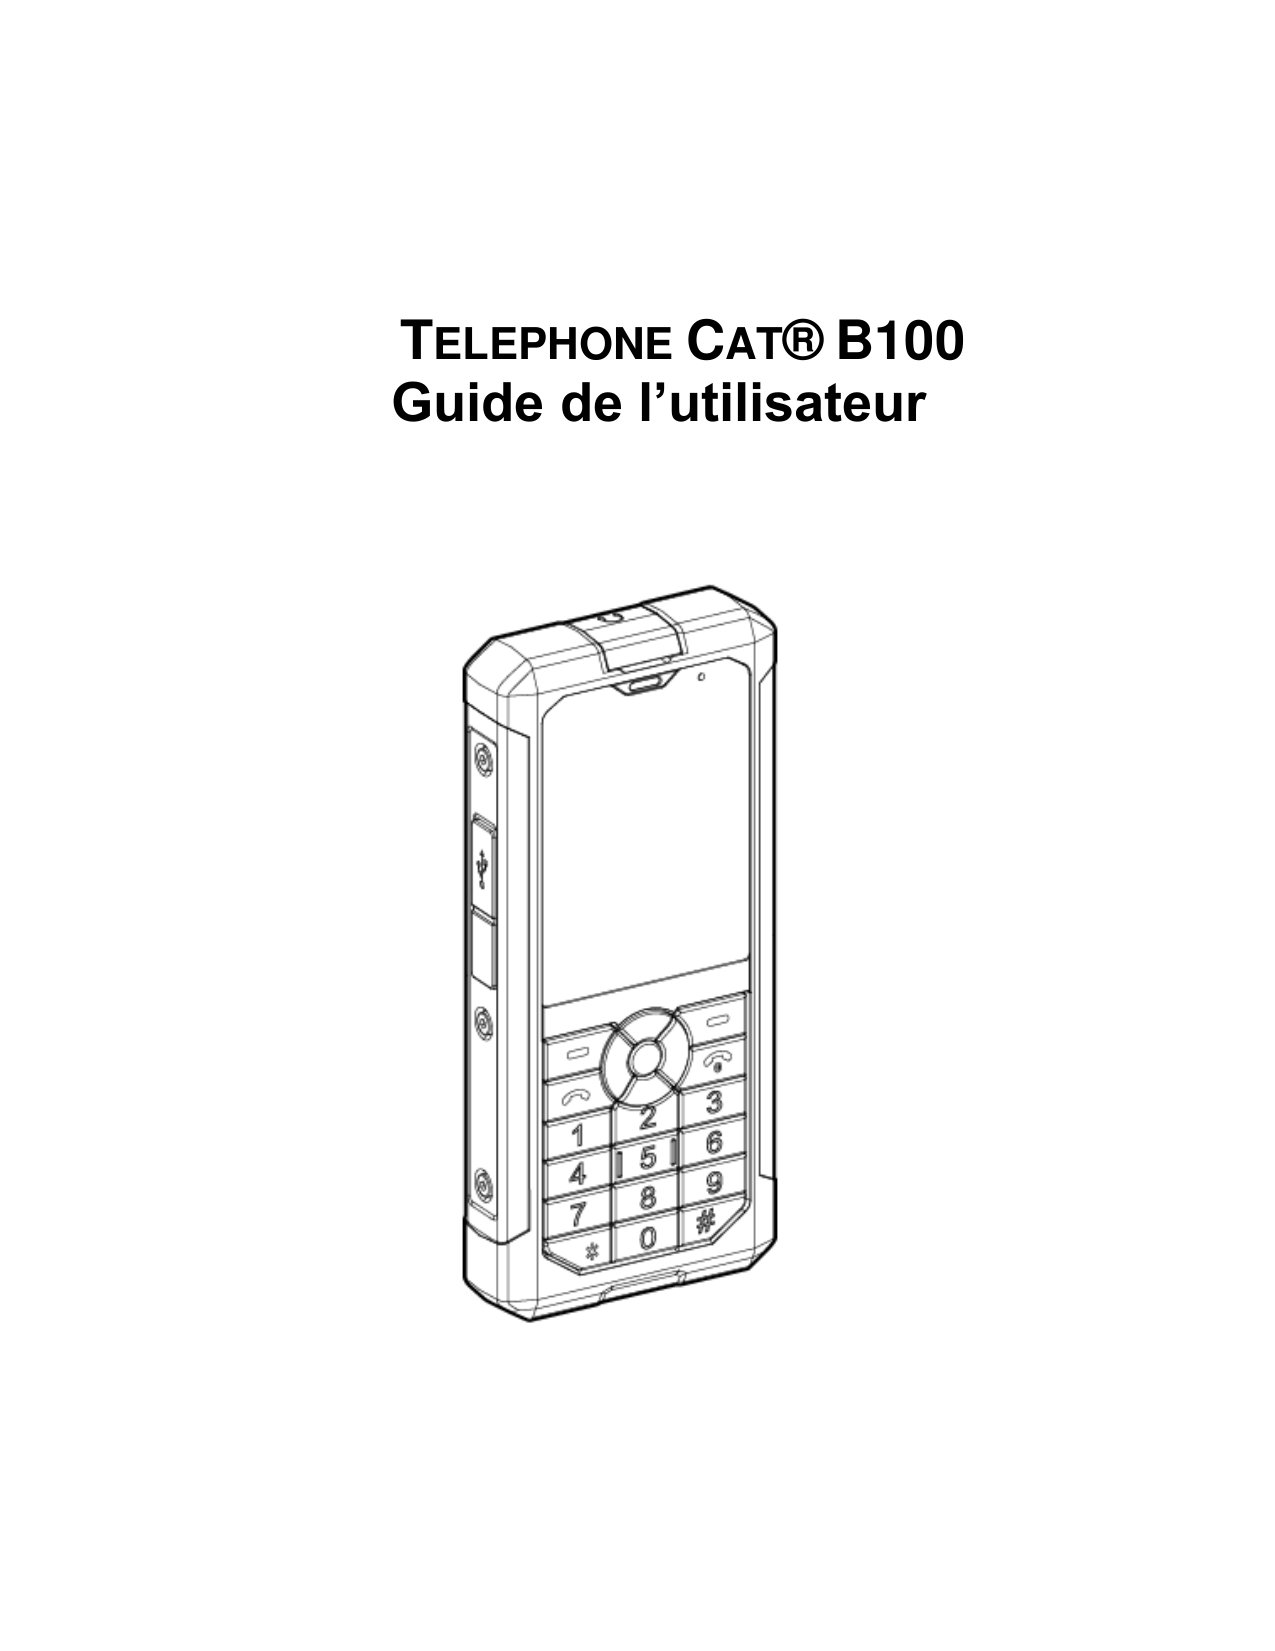 TELEPHONE CAT® B100Guide de l’utilisateur